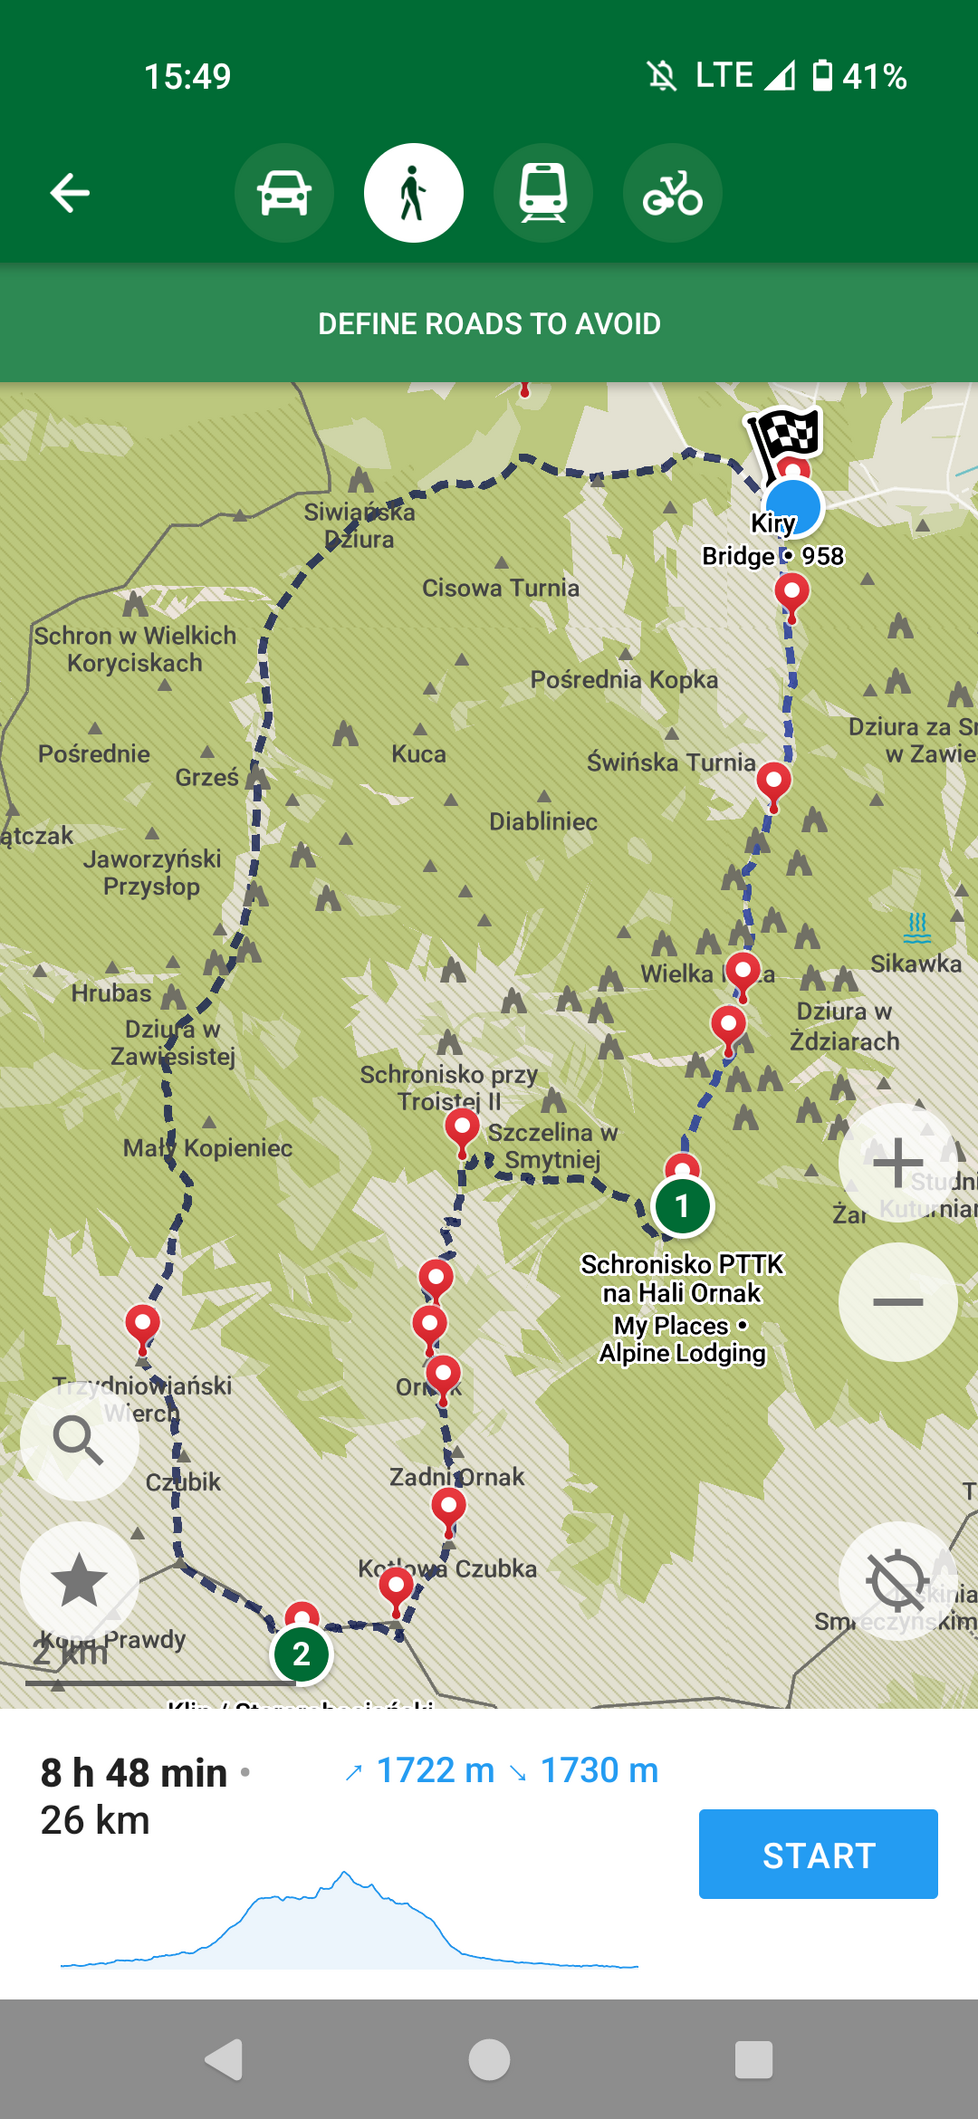 Trasa na Starorobociański Wierch z Doliny Kościeliskiej, powrót przez Dolinę Chochołowską wyznaczona w aplikacji. Czas przejścia blisko 9h, odległość 26km.